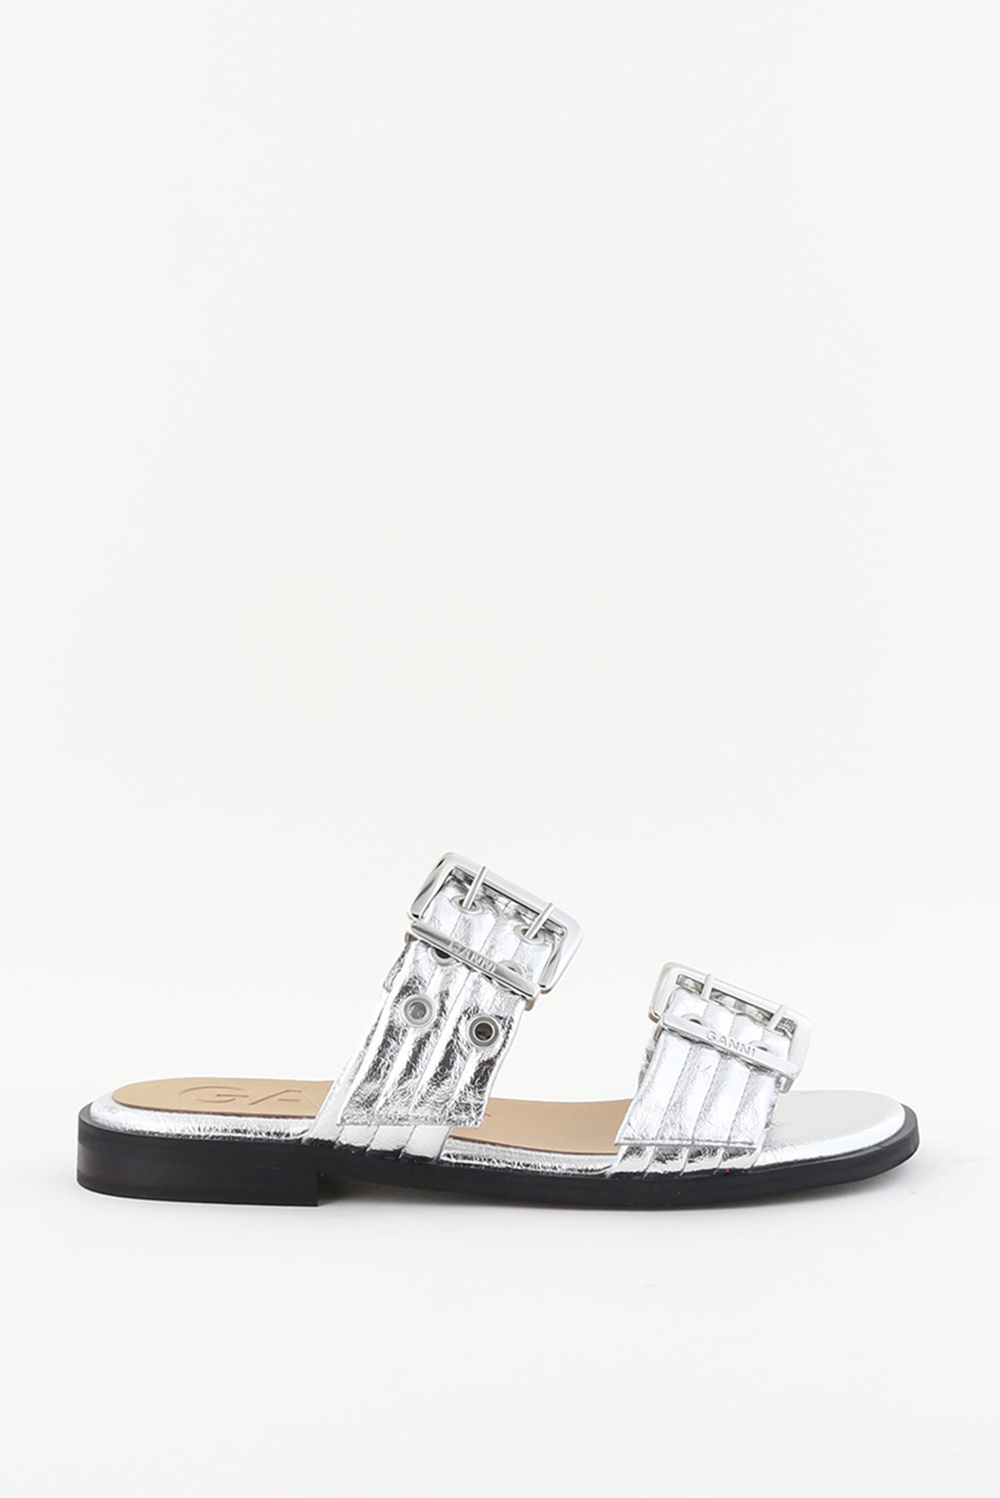 Ganni sandalen met gesp S2666 zilver